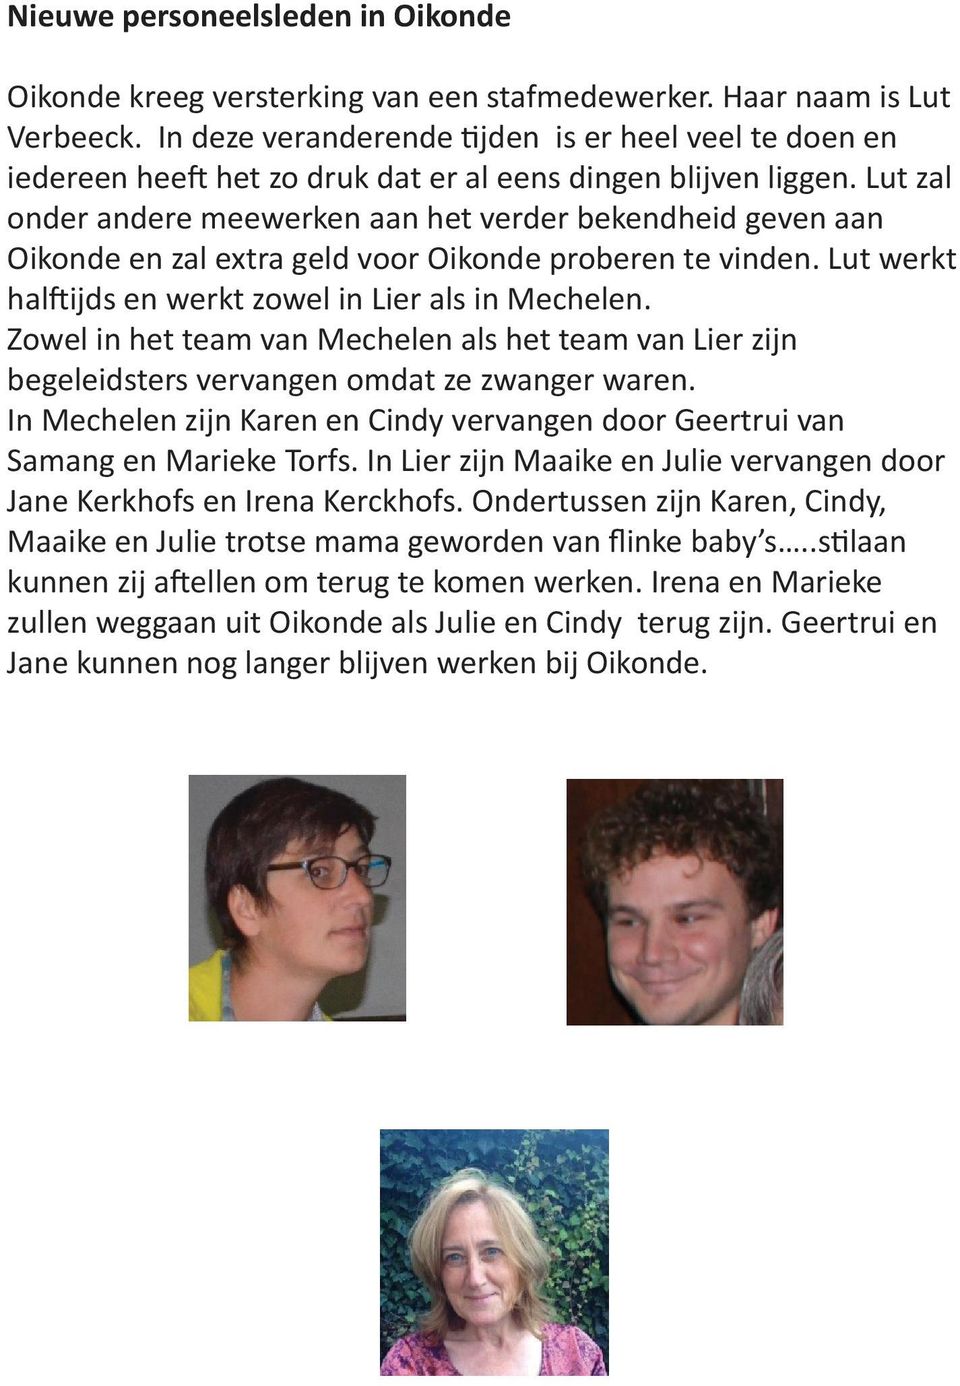 Lut zal onder andere meewerken aan het verder bekendheid geven aan Oikonde en zal extra geld voor Oikonde proberen te vinden. Lut werkt halftijds en werkt zowel in Lier als in Mechelen.